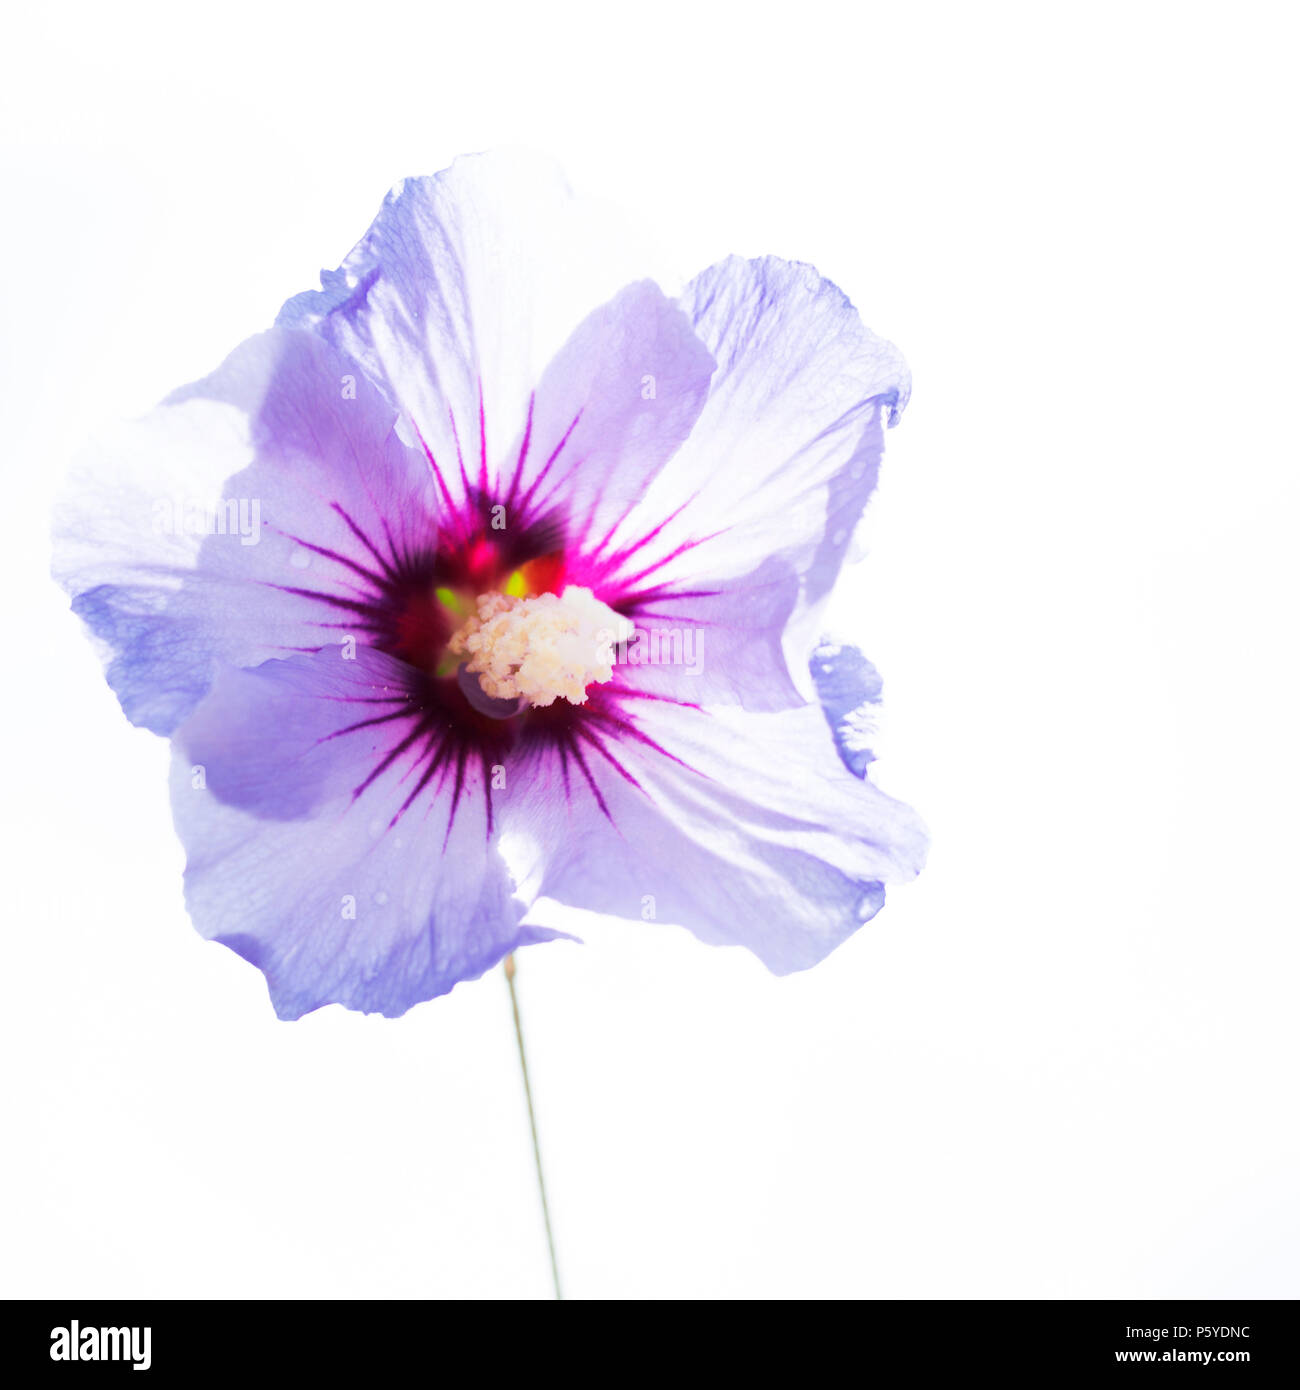 In der Nähe von einem schönen isoliert Purple hibiscus Blume oder rose Mallow, voller Details, in high key mit weißem Hintergrund fotografiert. Stockfoto